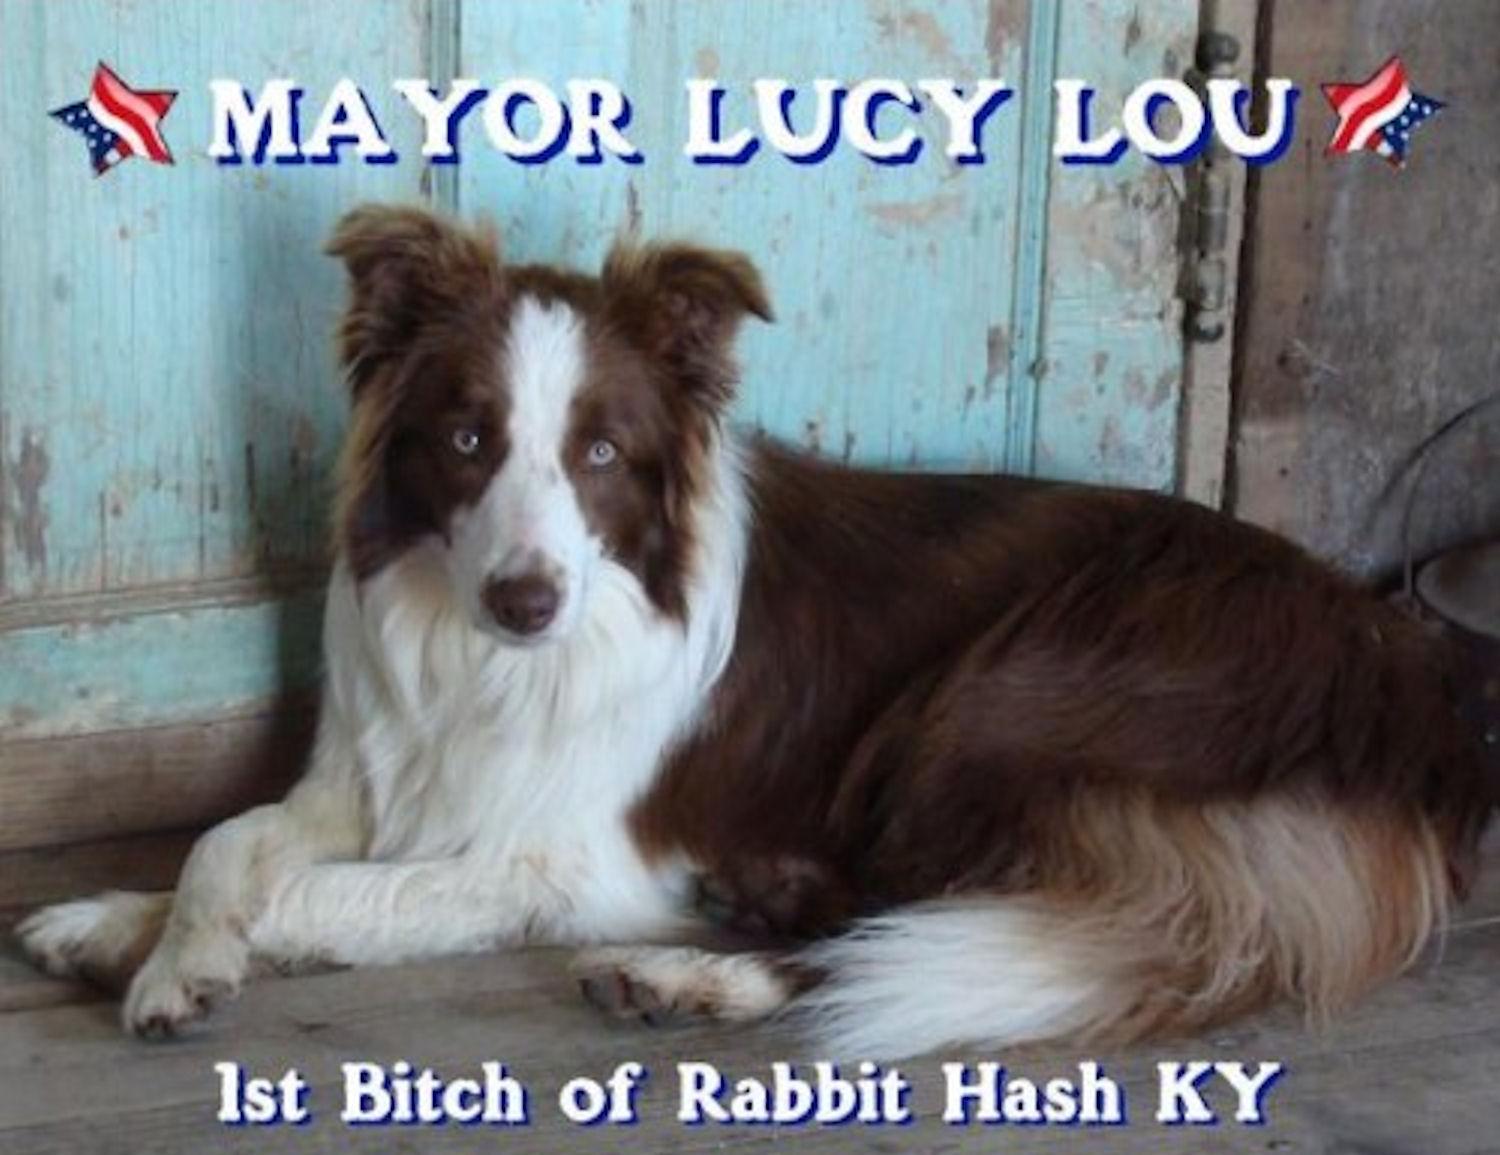 Resultado de imagen para pictures of lucy lou mayor of rabbit hash